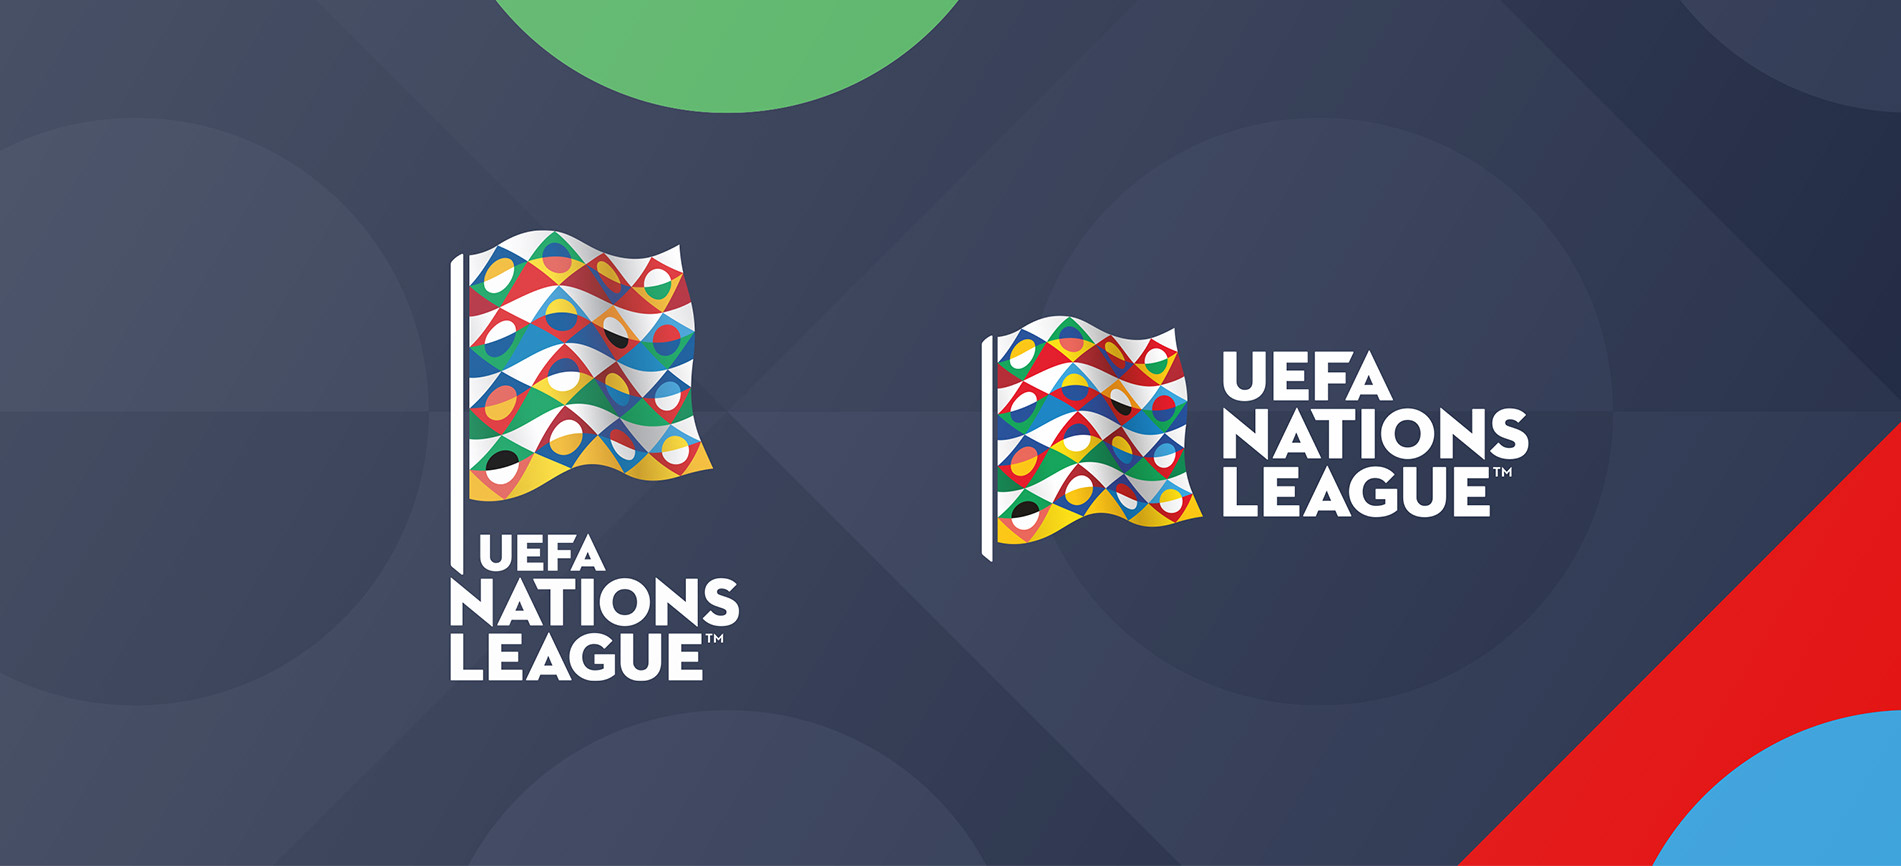 Font UEFA Nations